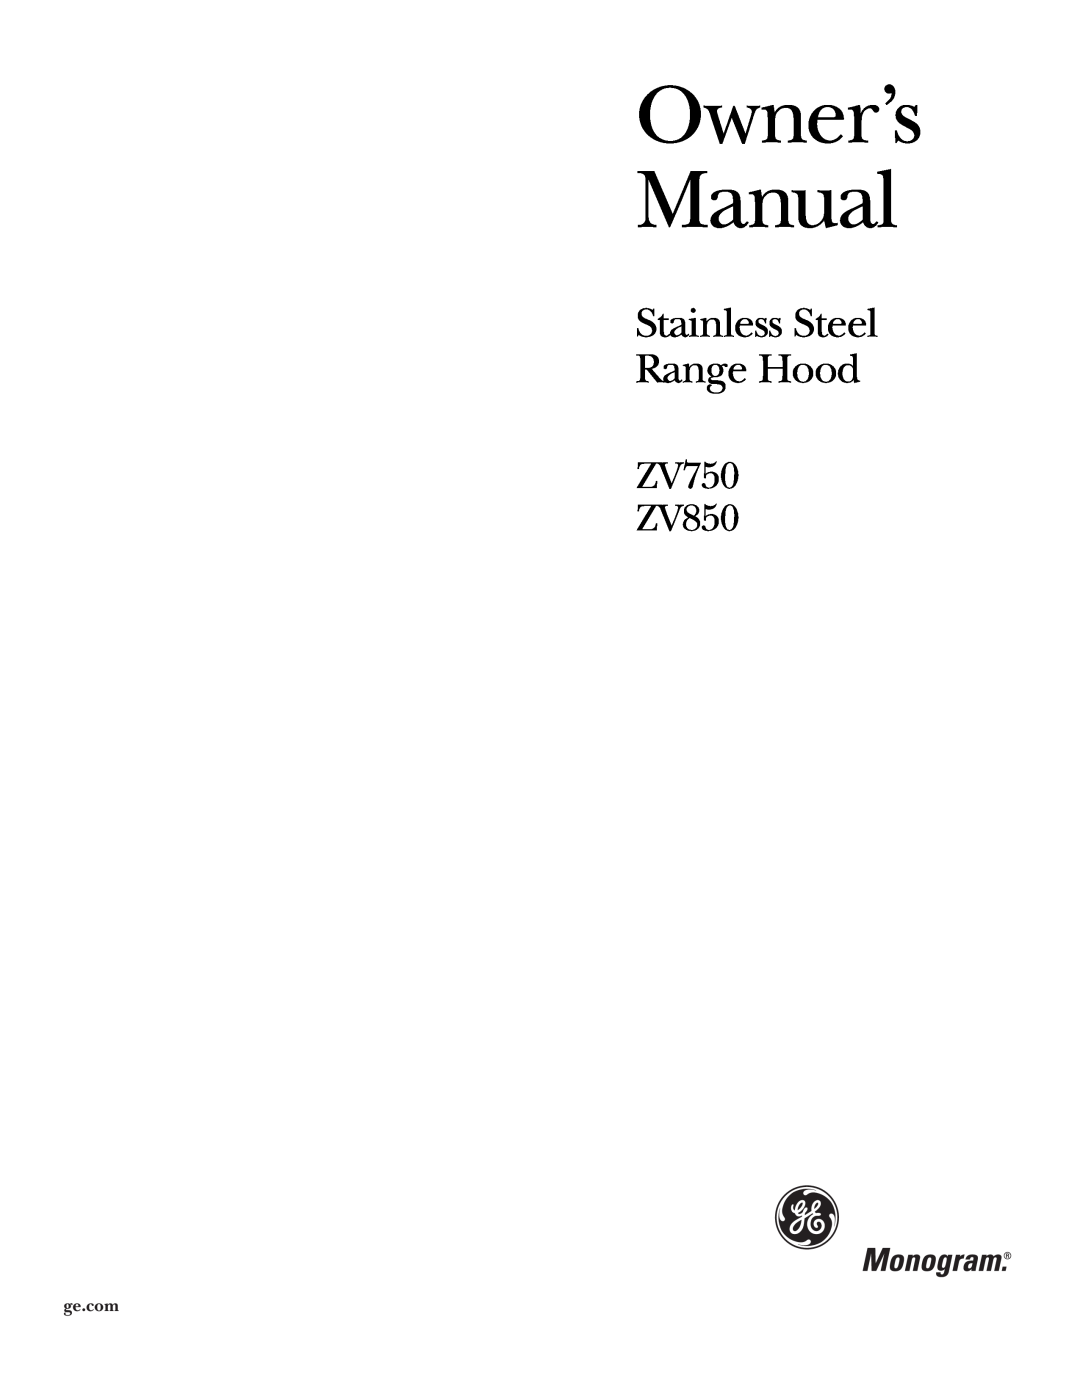 GE Monogram owner manual Stainless Steel Range Hood, ZV750 ZV850 